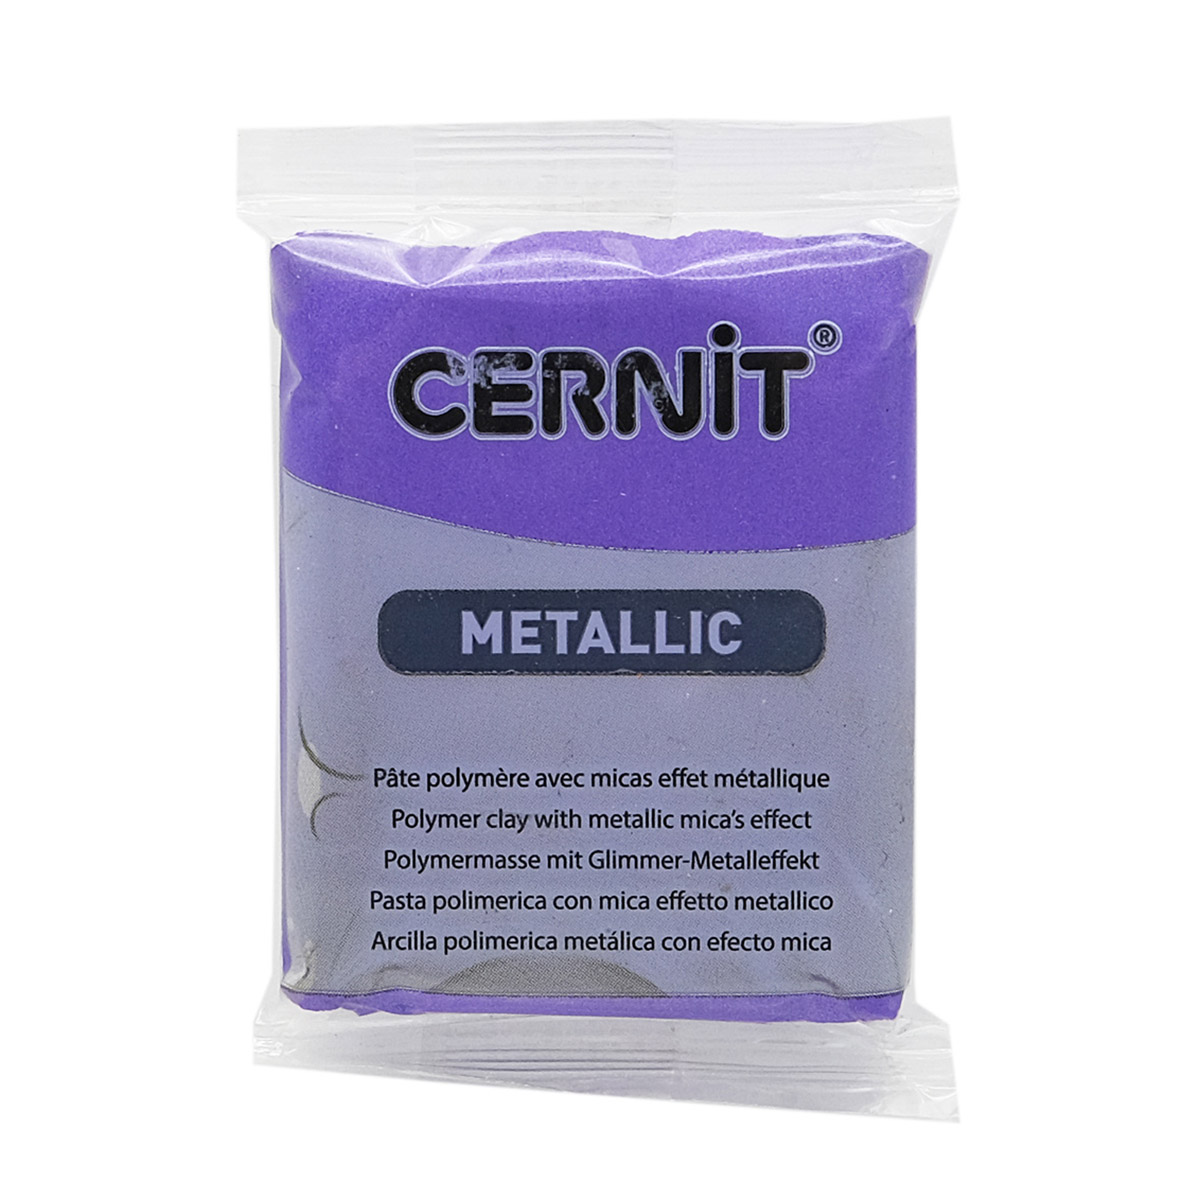 Пластика Cernit Metallic, 56 грамм, цвет 900 фиолетовый, арт. CE0870056 тетрадь а4 96л кл metallic croco фиолетовый скоба бумвинил